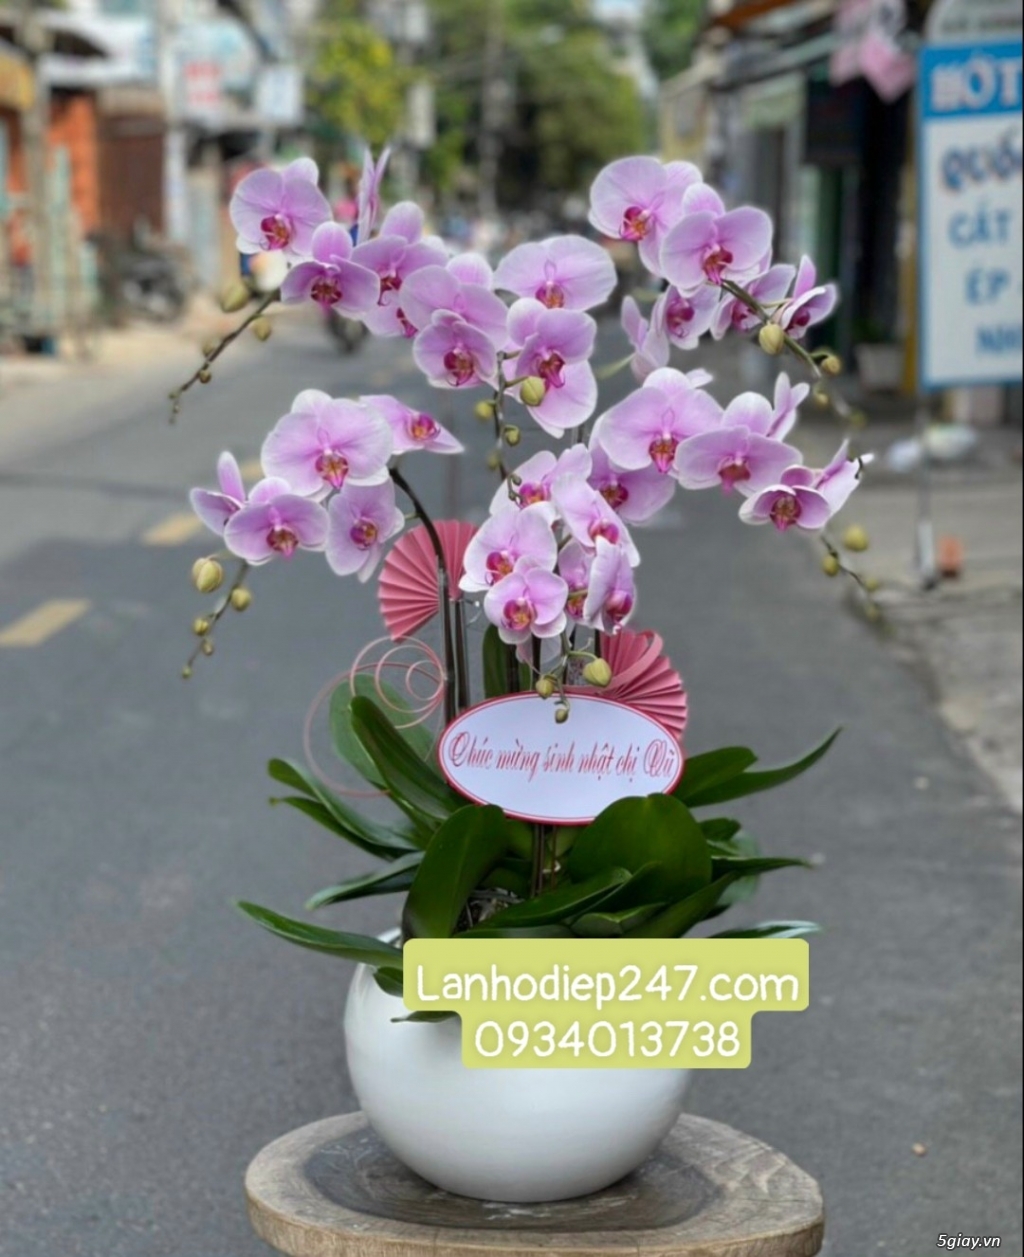 Shop hoa tươi Lan Hồ Điệp 247 tại Quy Nhơn 0934013738 - 11